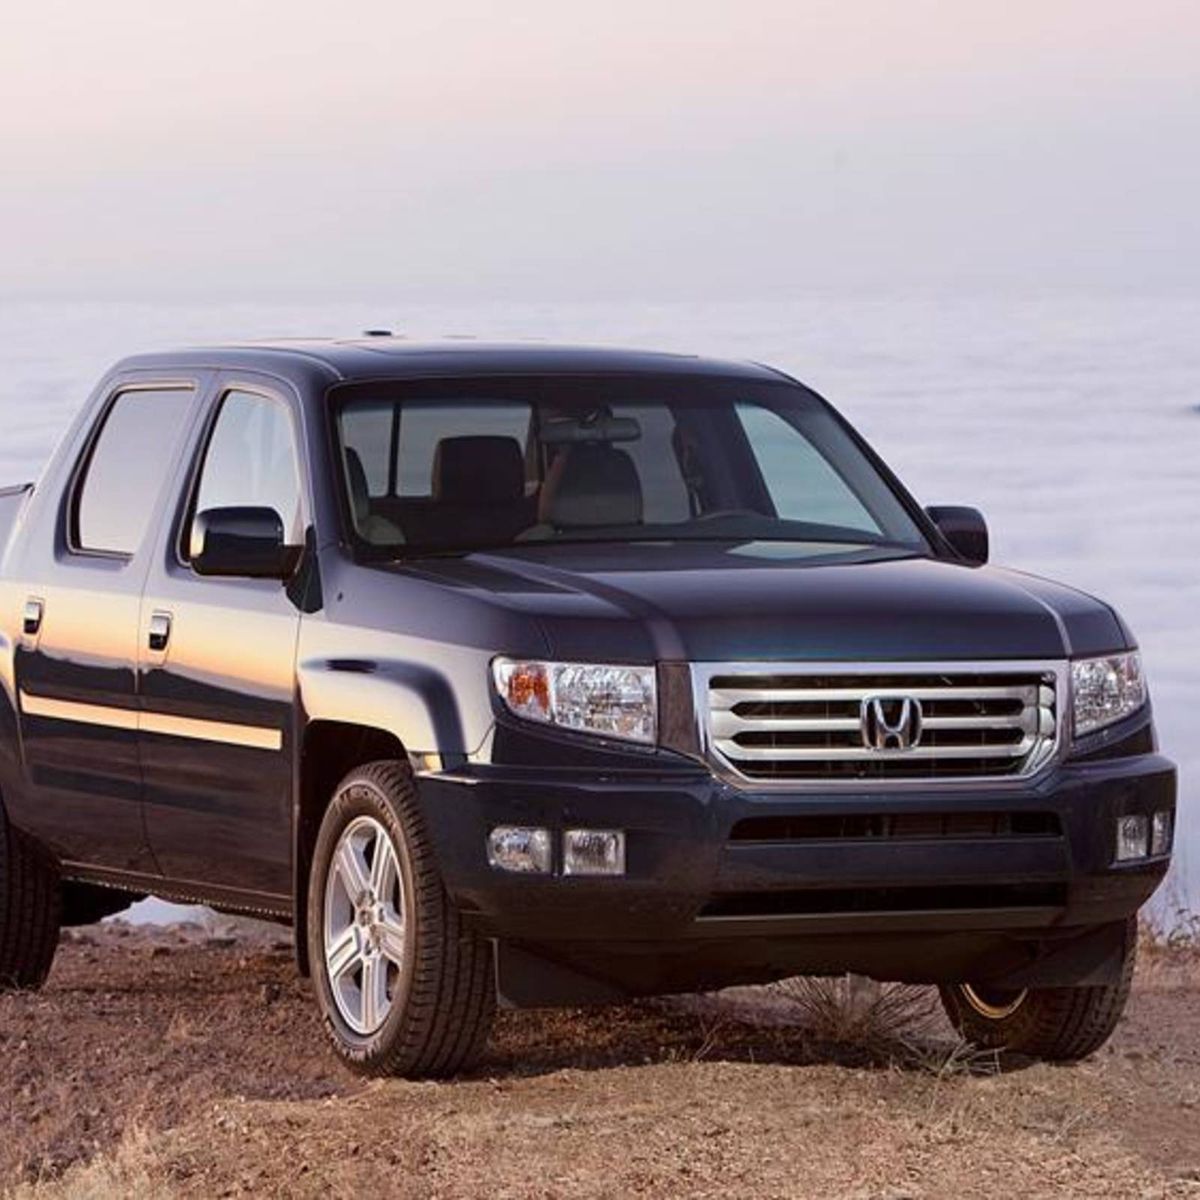 2012 Honda Ridgeline RTL review notes: Still a high-function, light-duty  truck